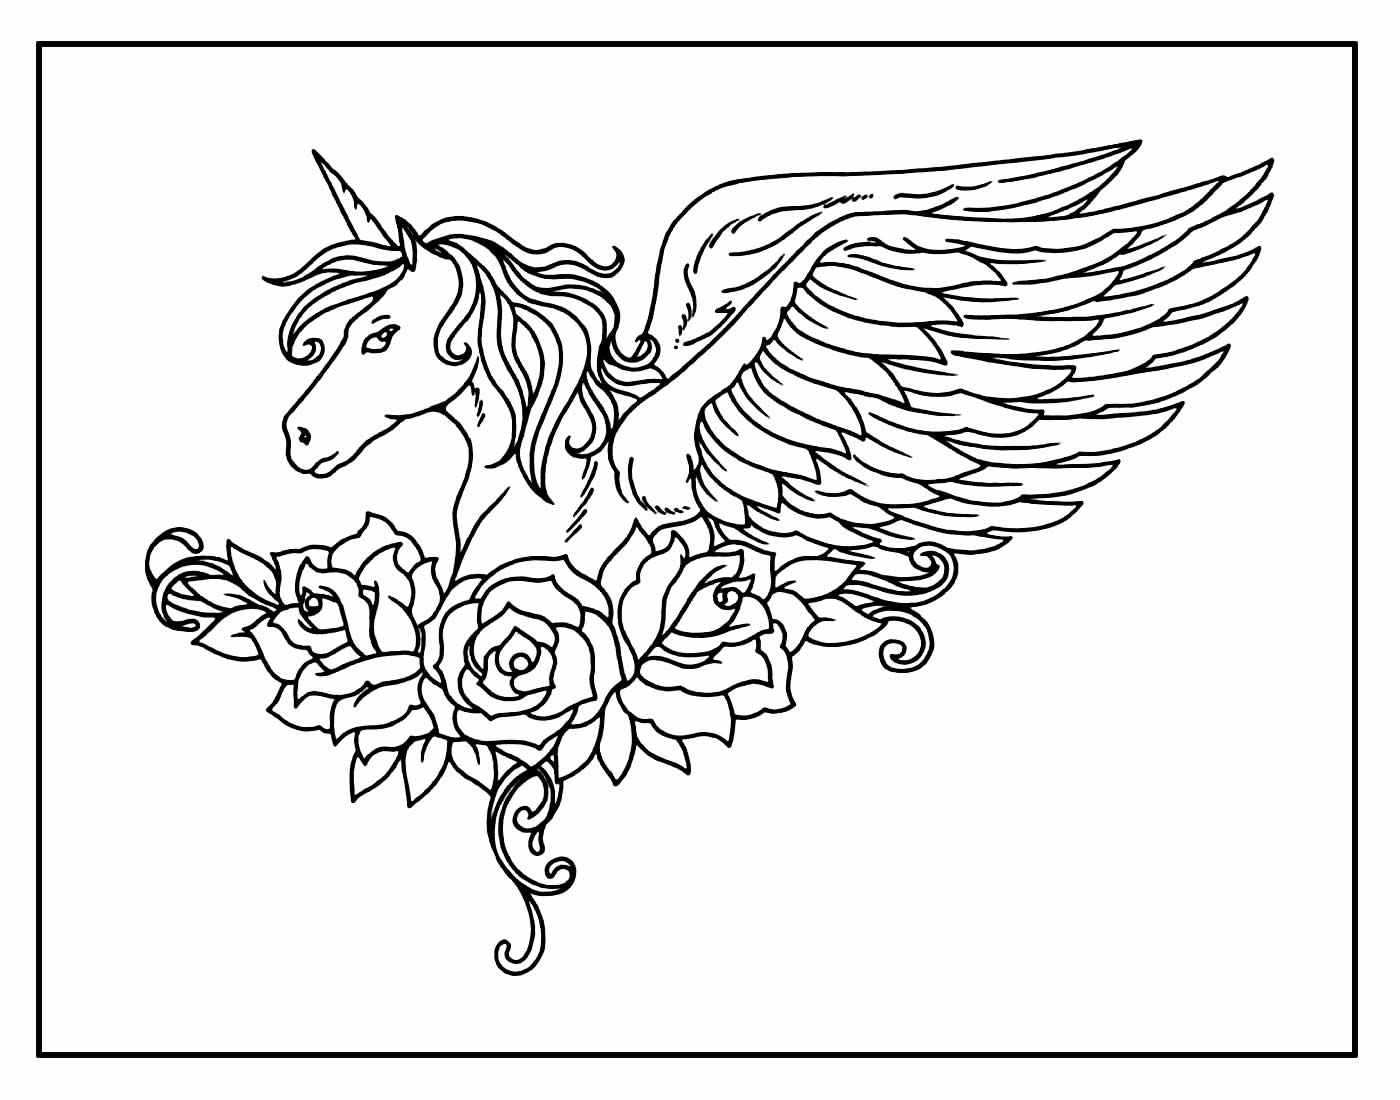 Раскраска Единорог с крыльями сложно